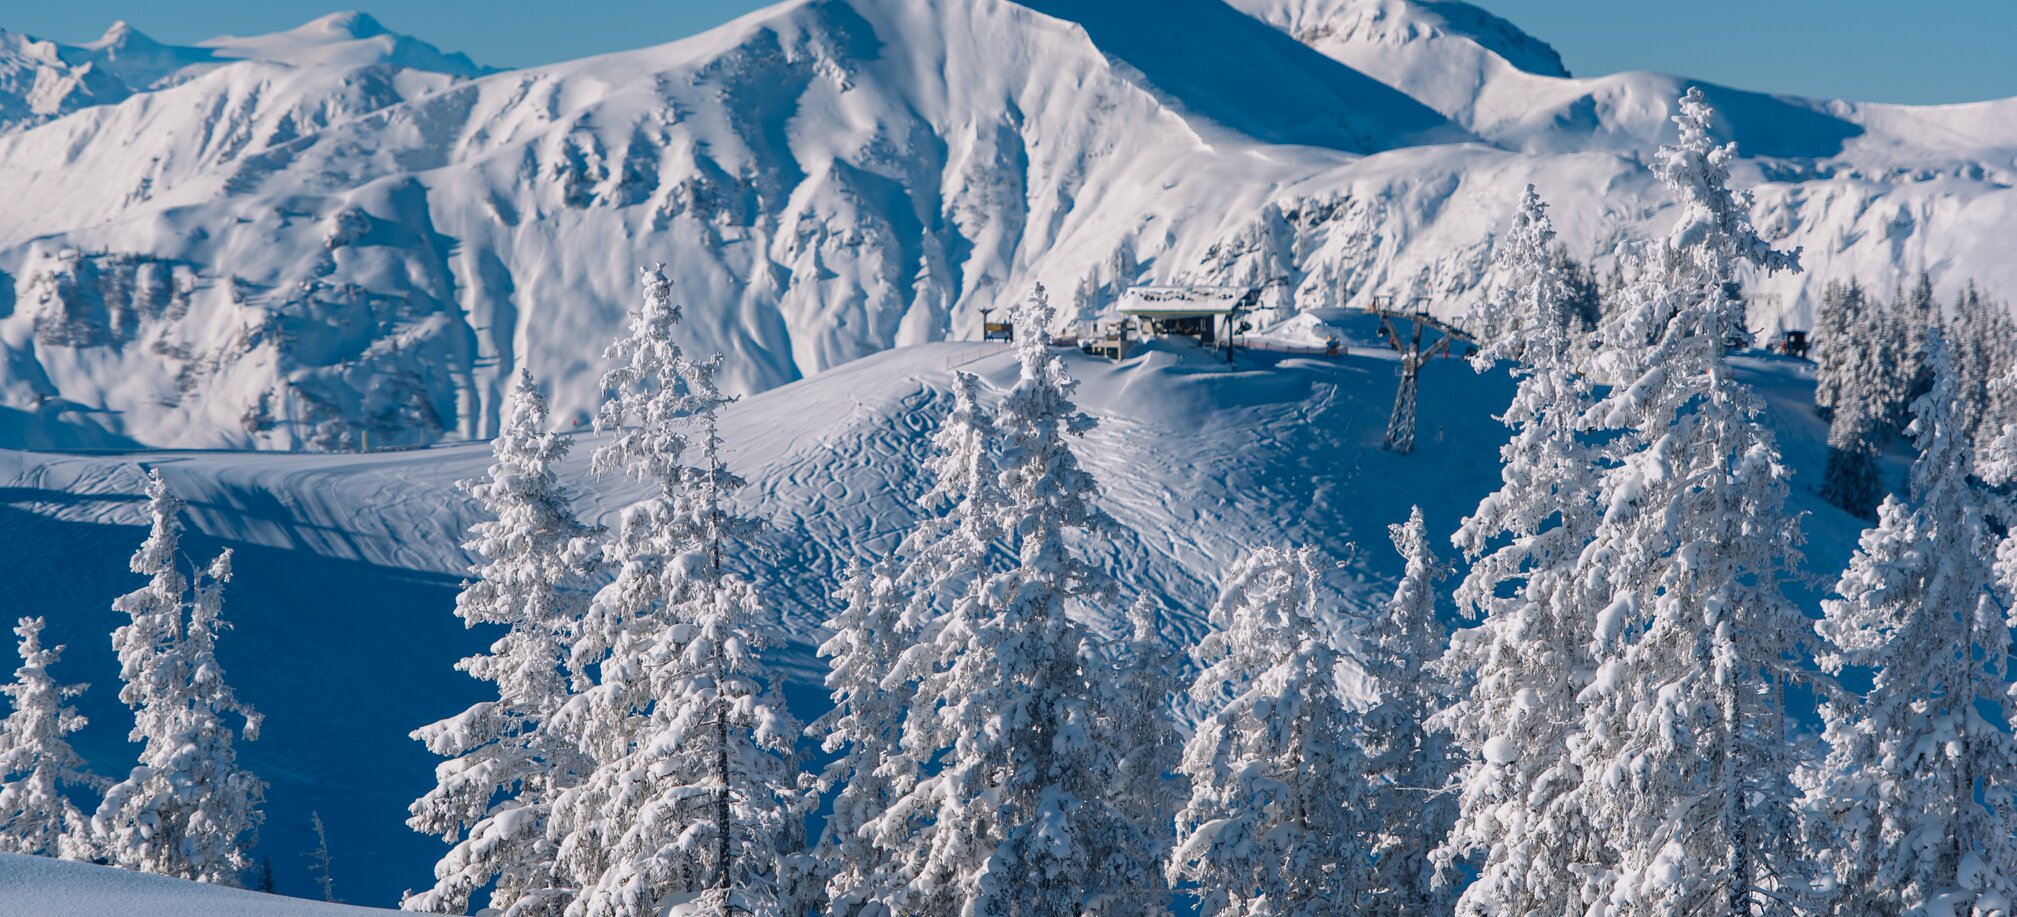 Beim Skifahren wunderschöne alpine Landschaften genießen in Ski amadé